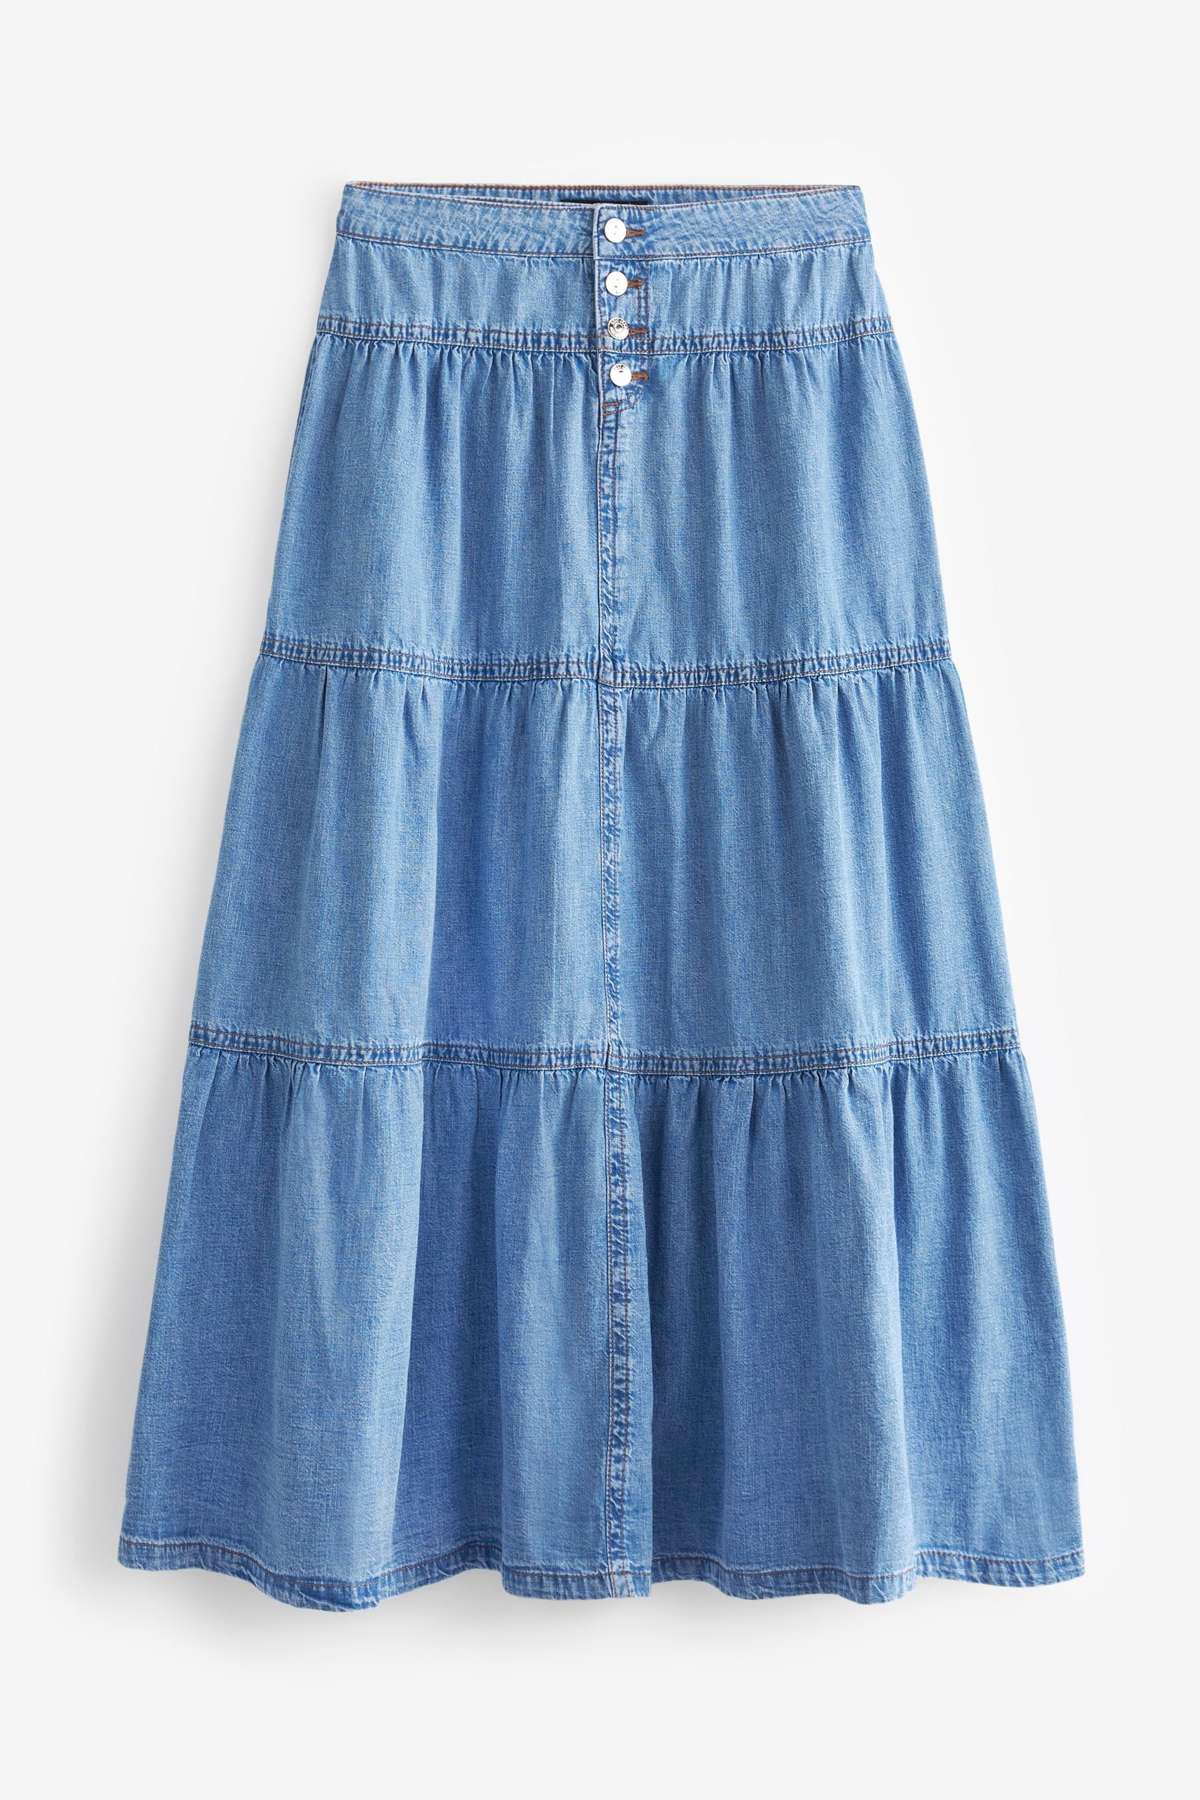 Джинсовая юбка Многоярусная джинсовая юбка макси